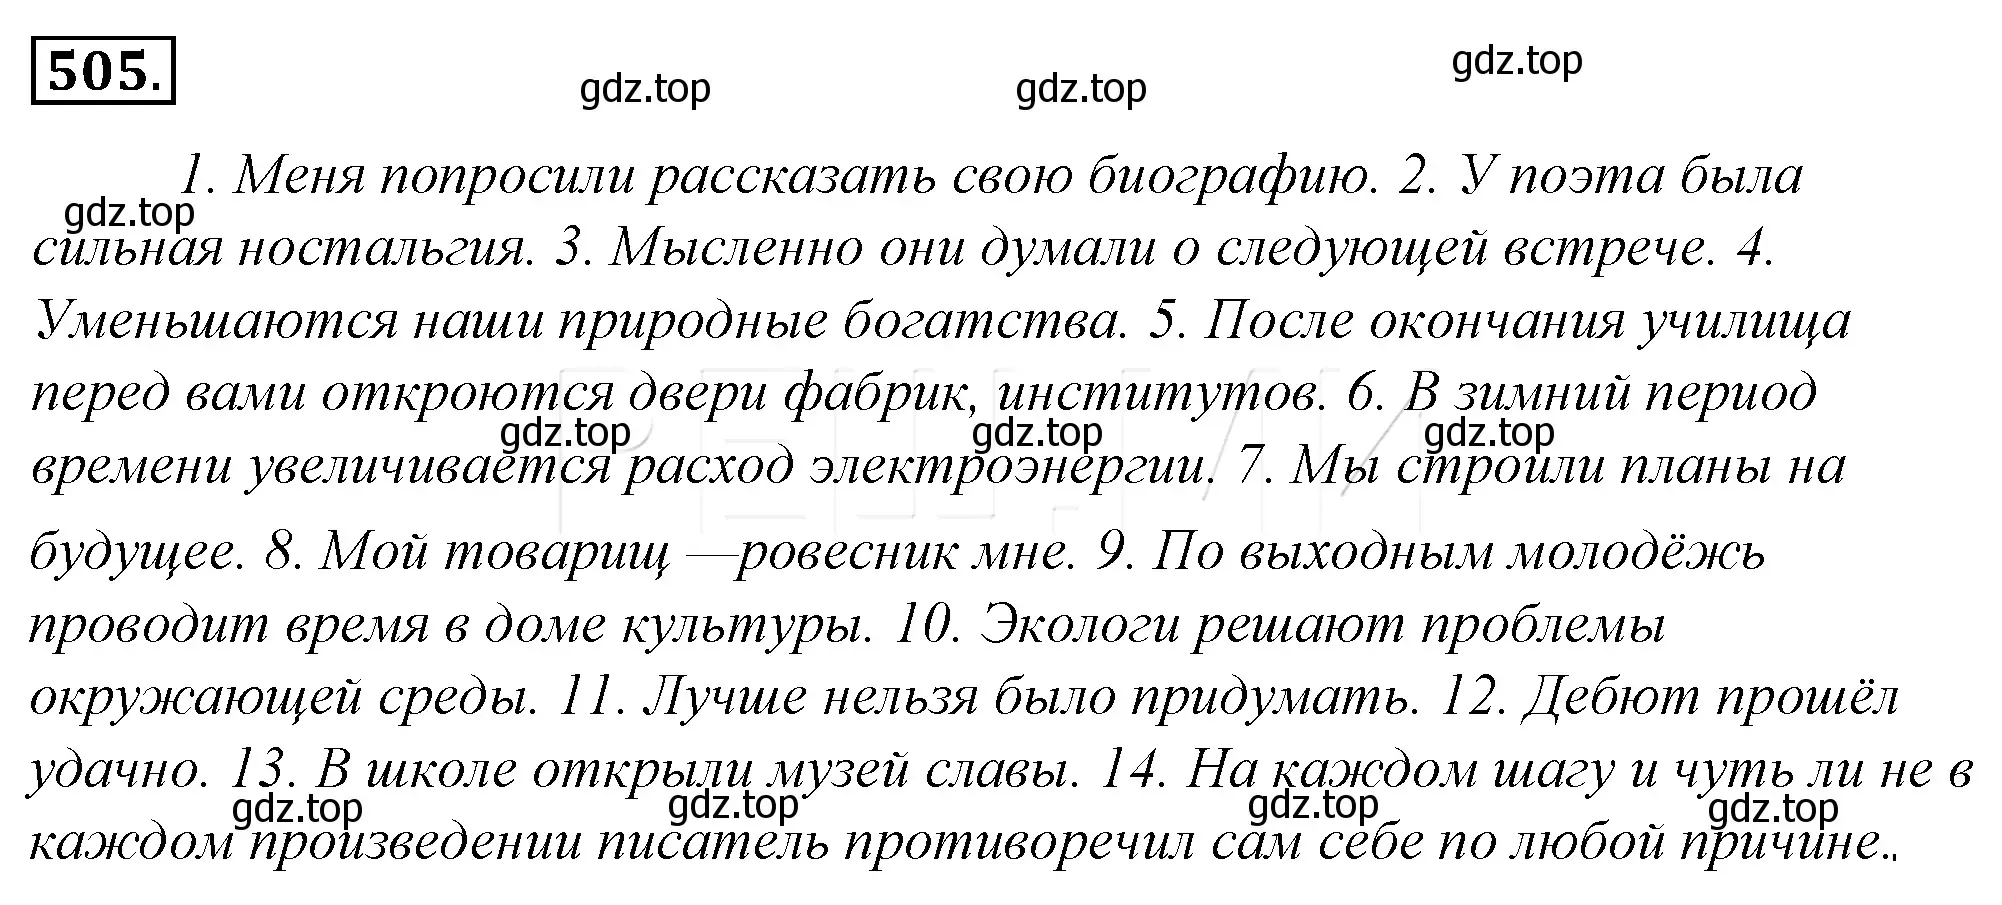 Решение 4. номер 176 (страница 250) гдз по русскому языку 10-11 класс Гольцова, Шамшин, учебник 2 часть